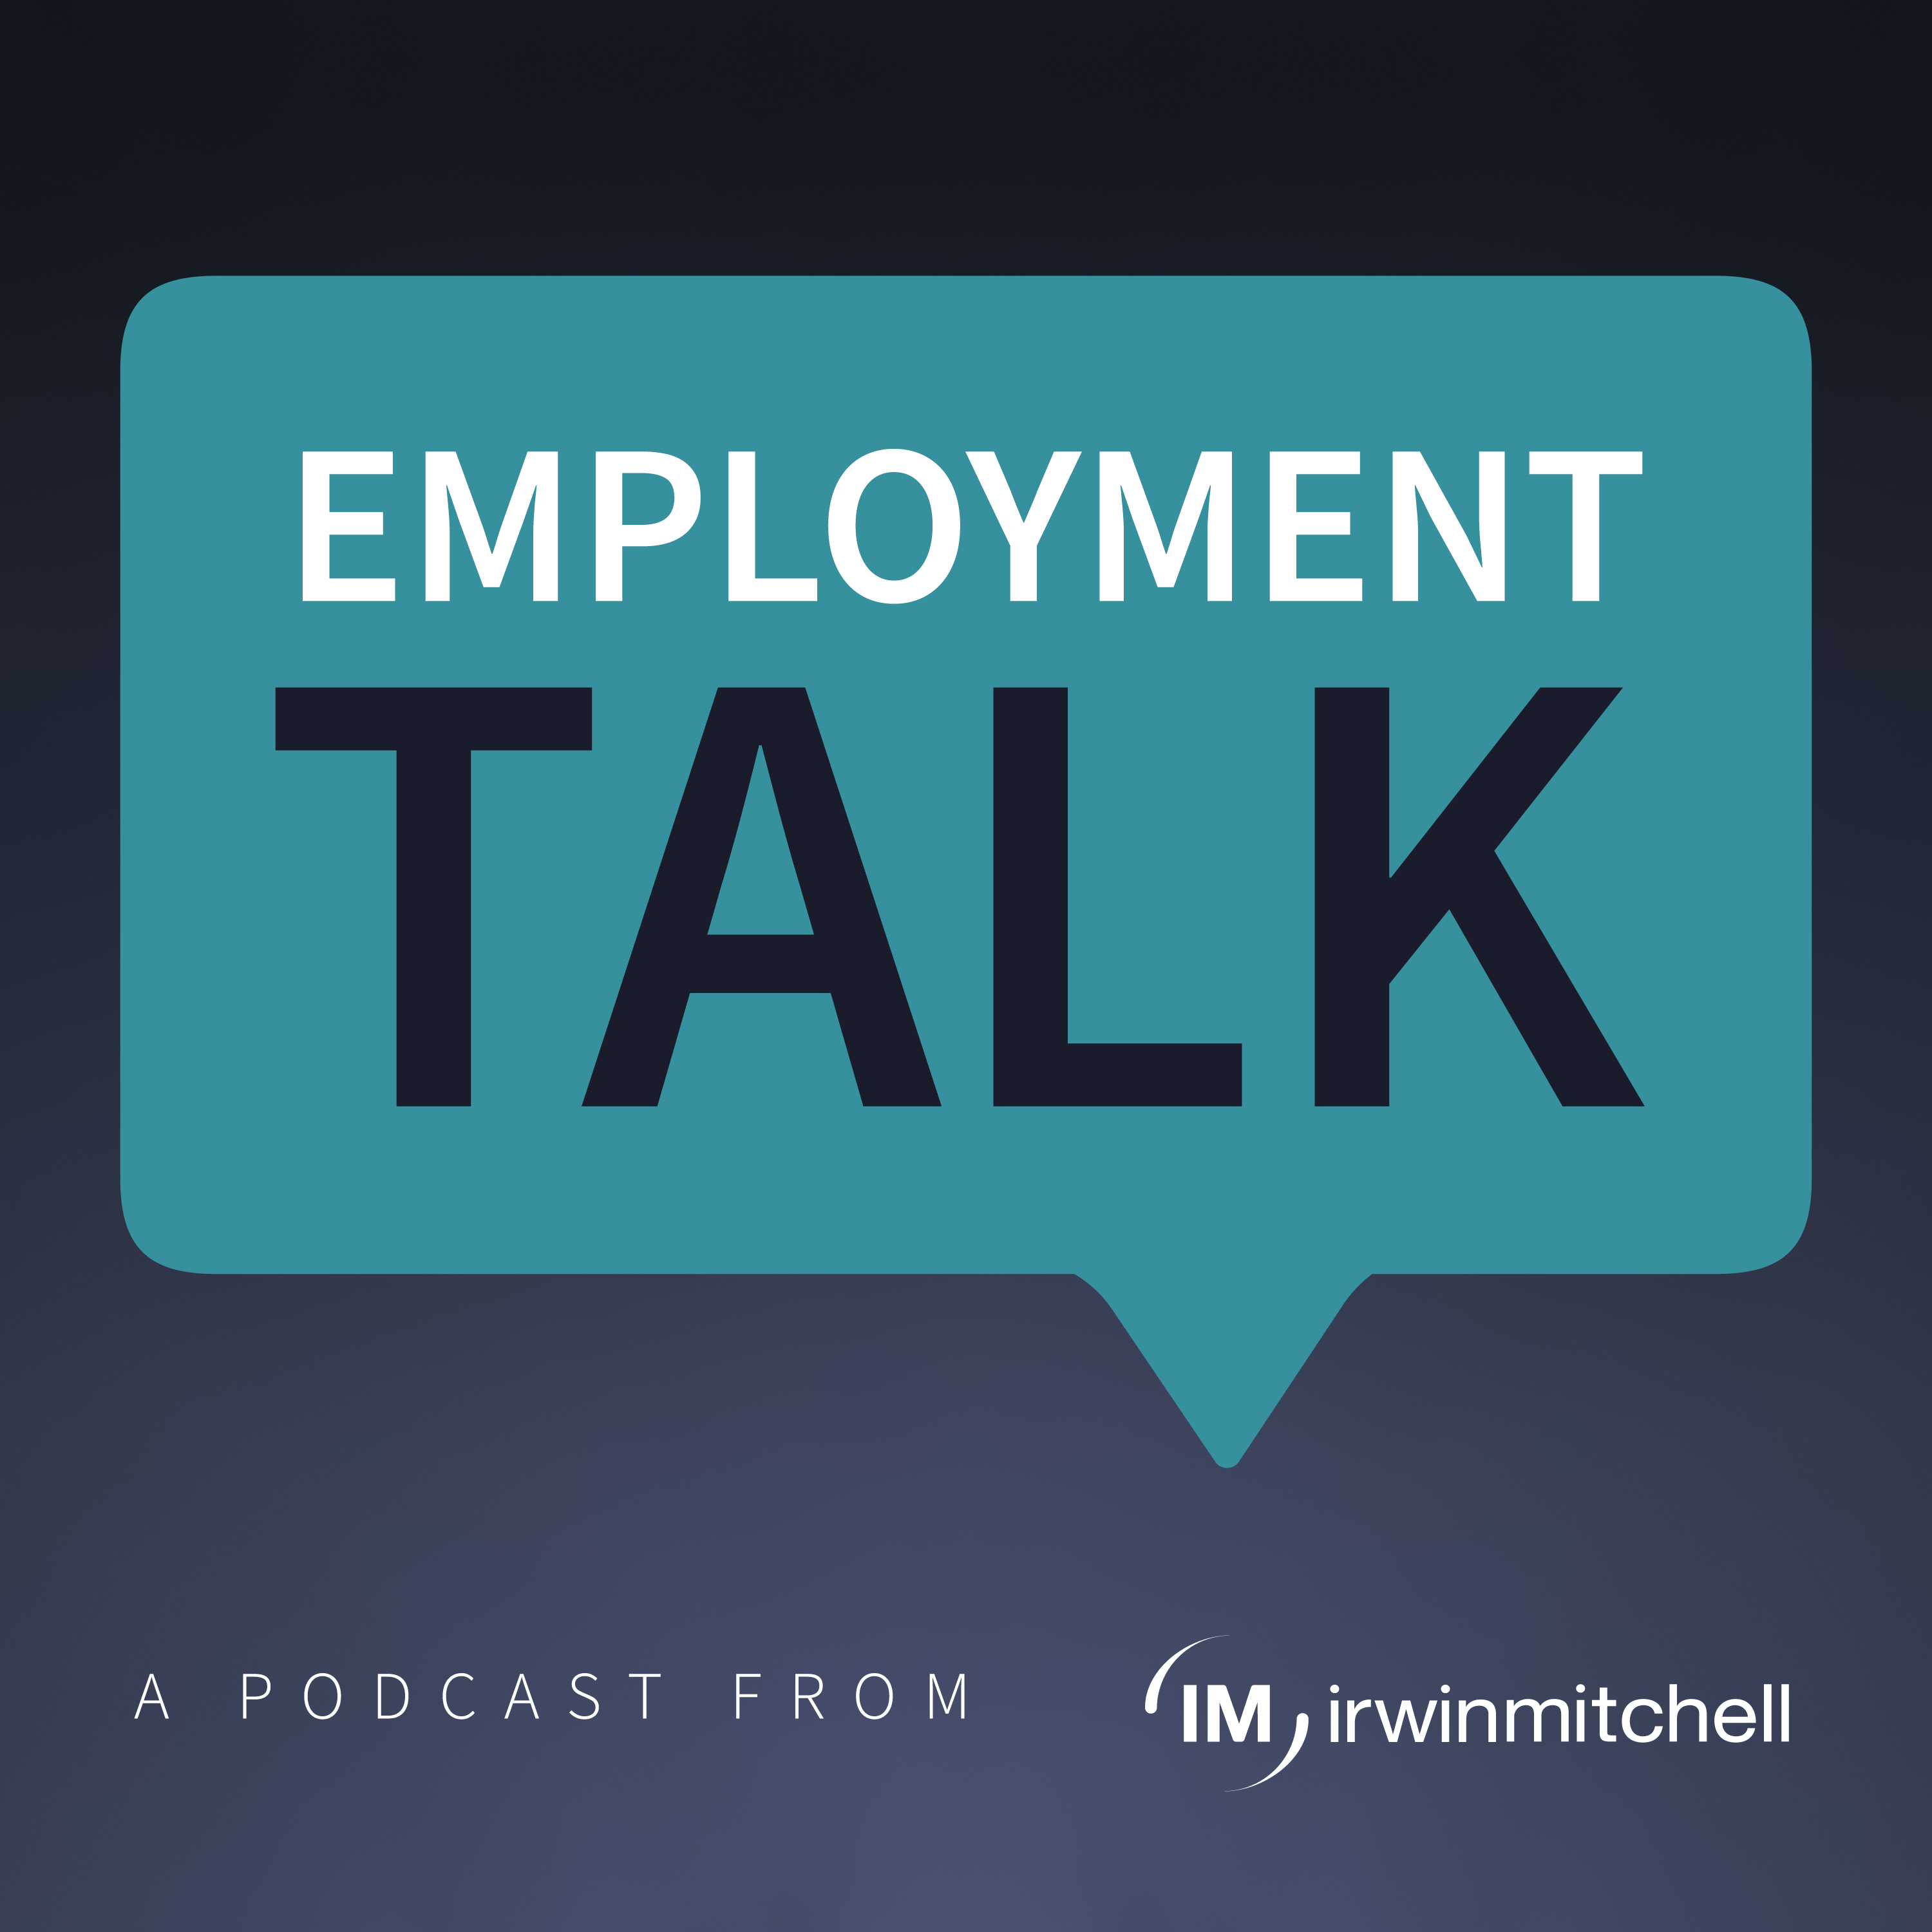 Employment talk podcast logo